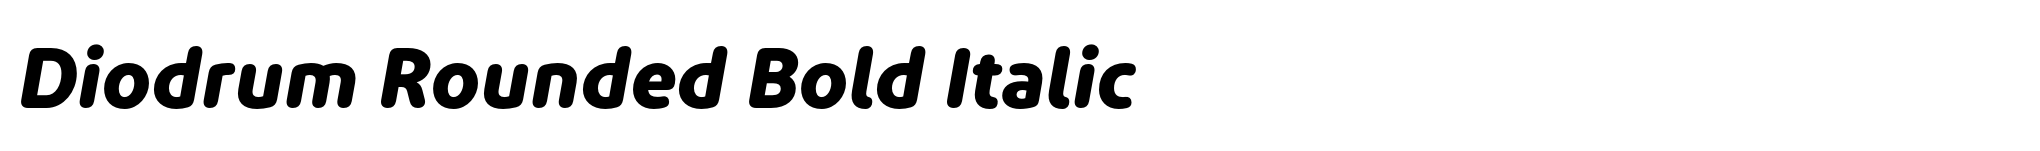 Diodrum Rounded Bold Italic image